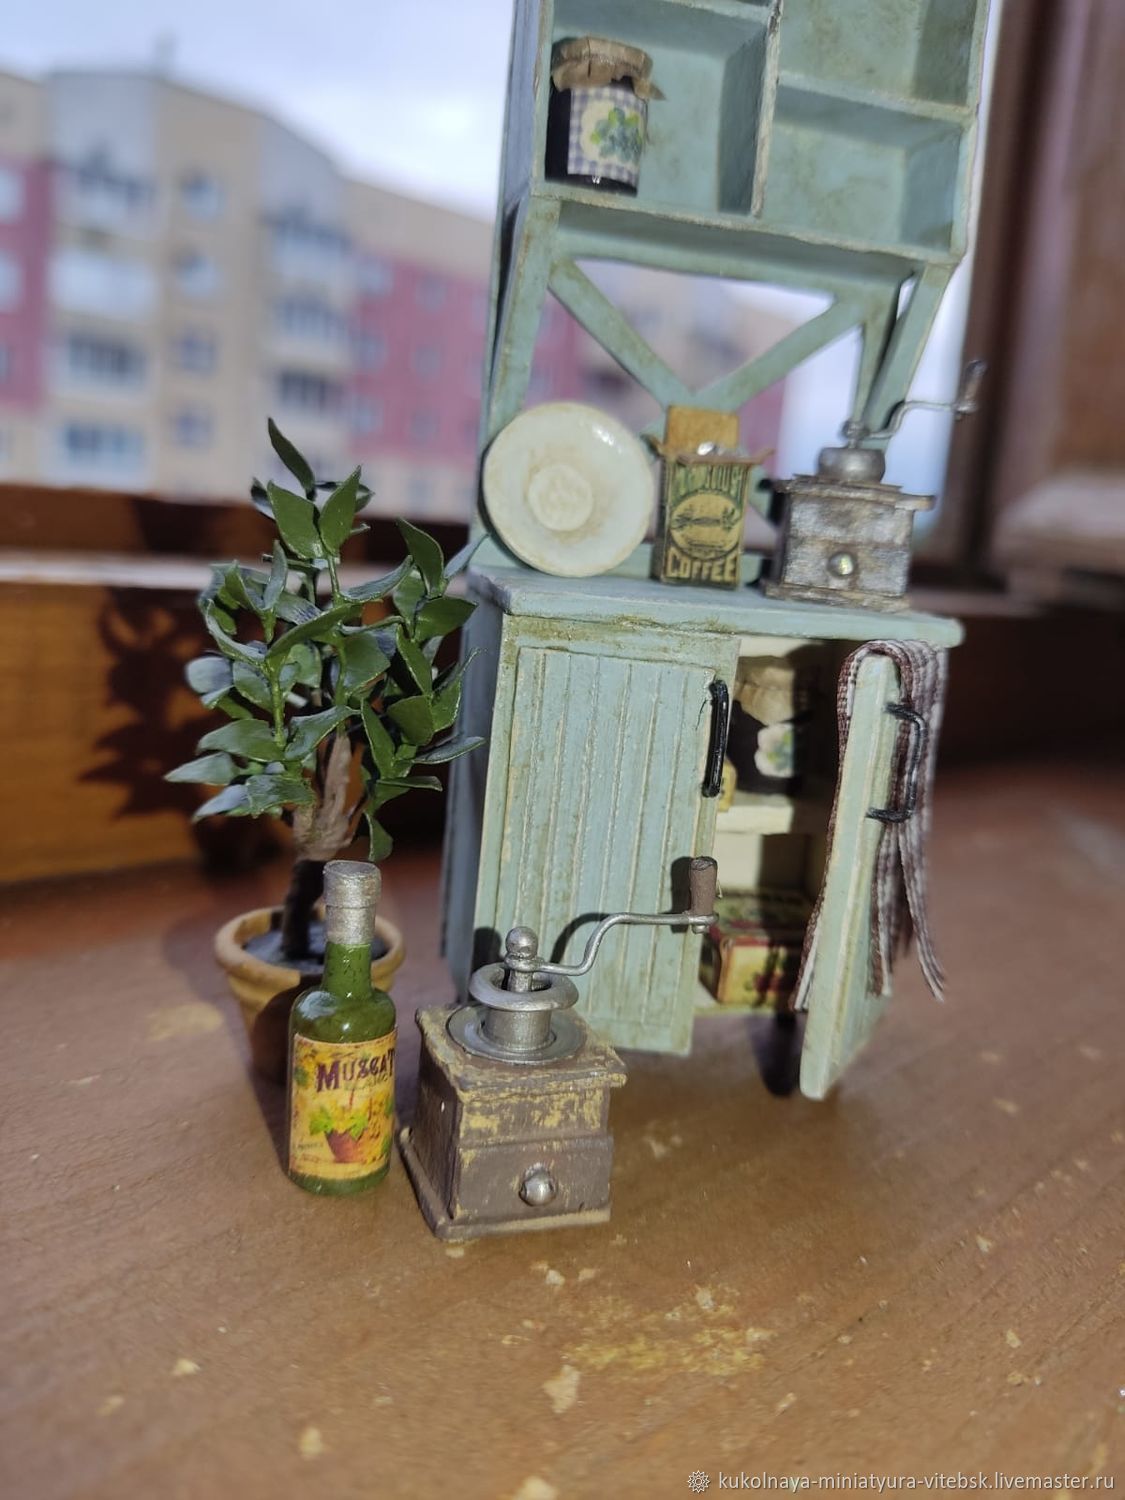   миниатюрная кофемолка, Кукольная посуда, Витебск,  Фото №1